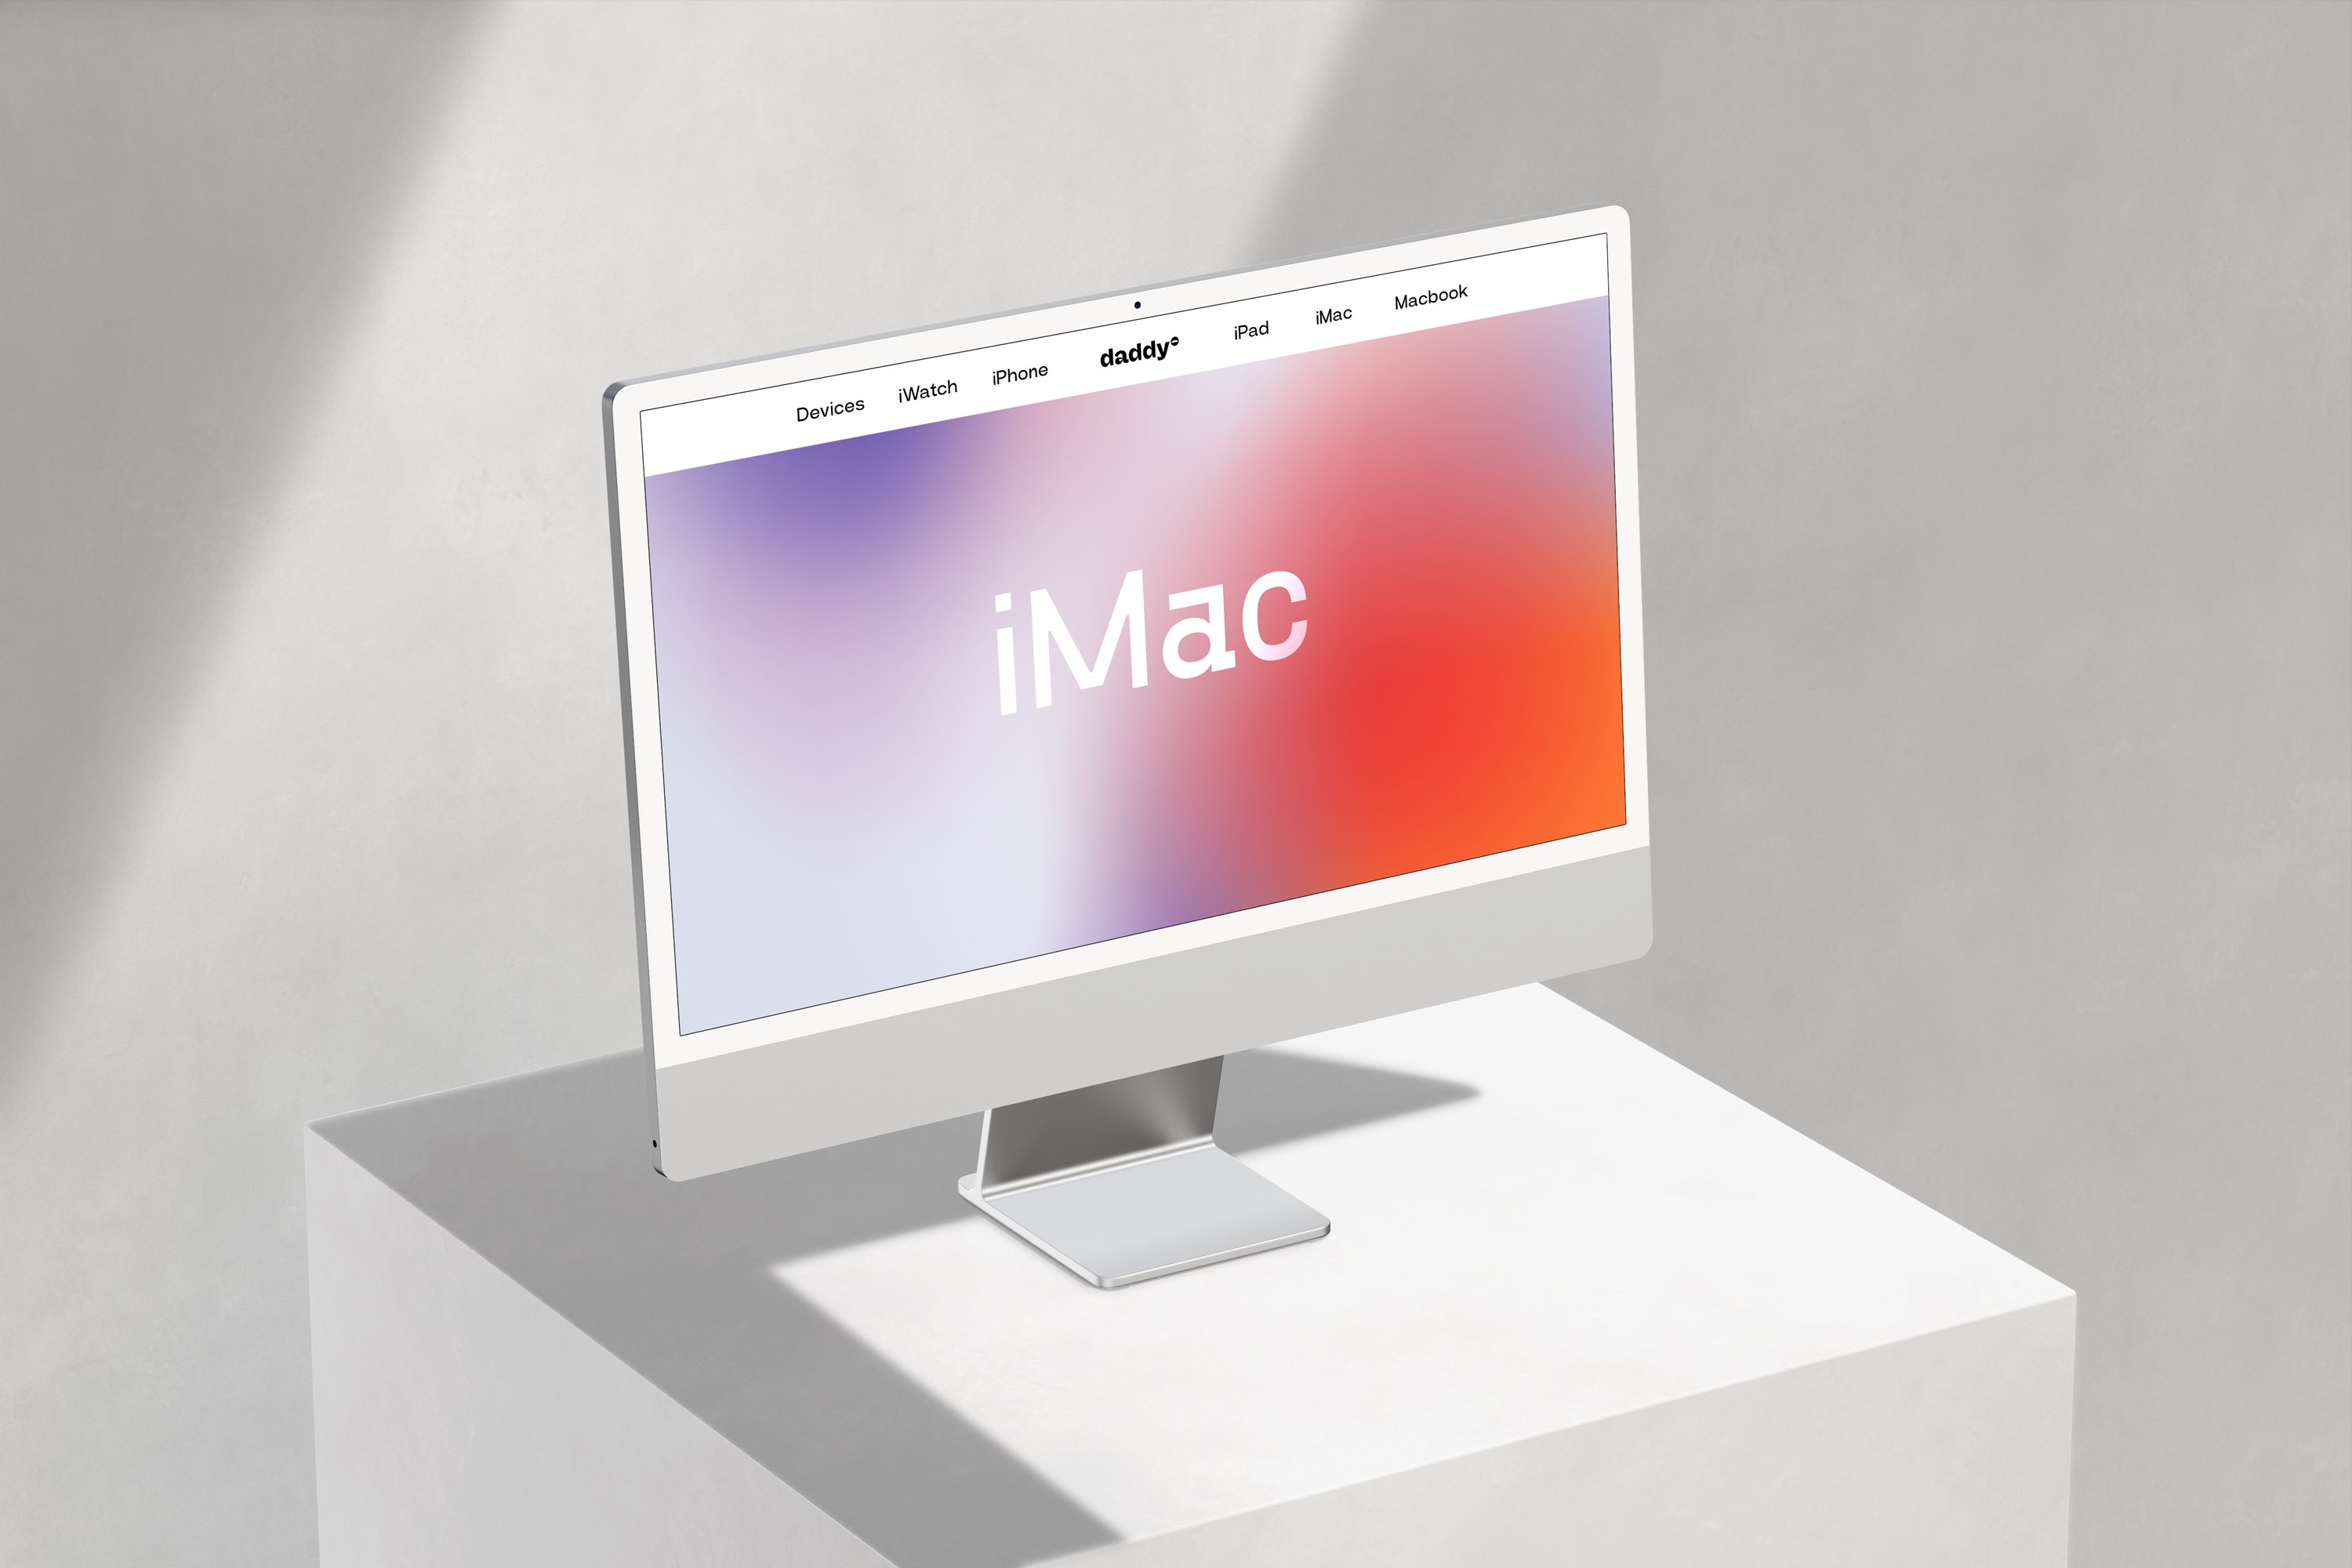 iMac Mockup Scene - 2 cover image.